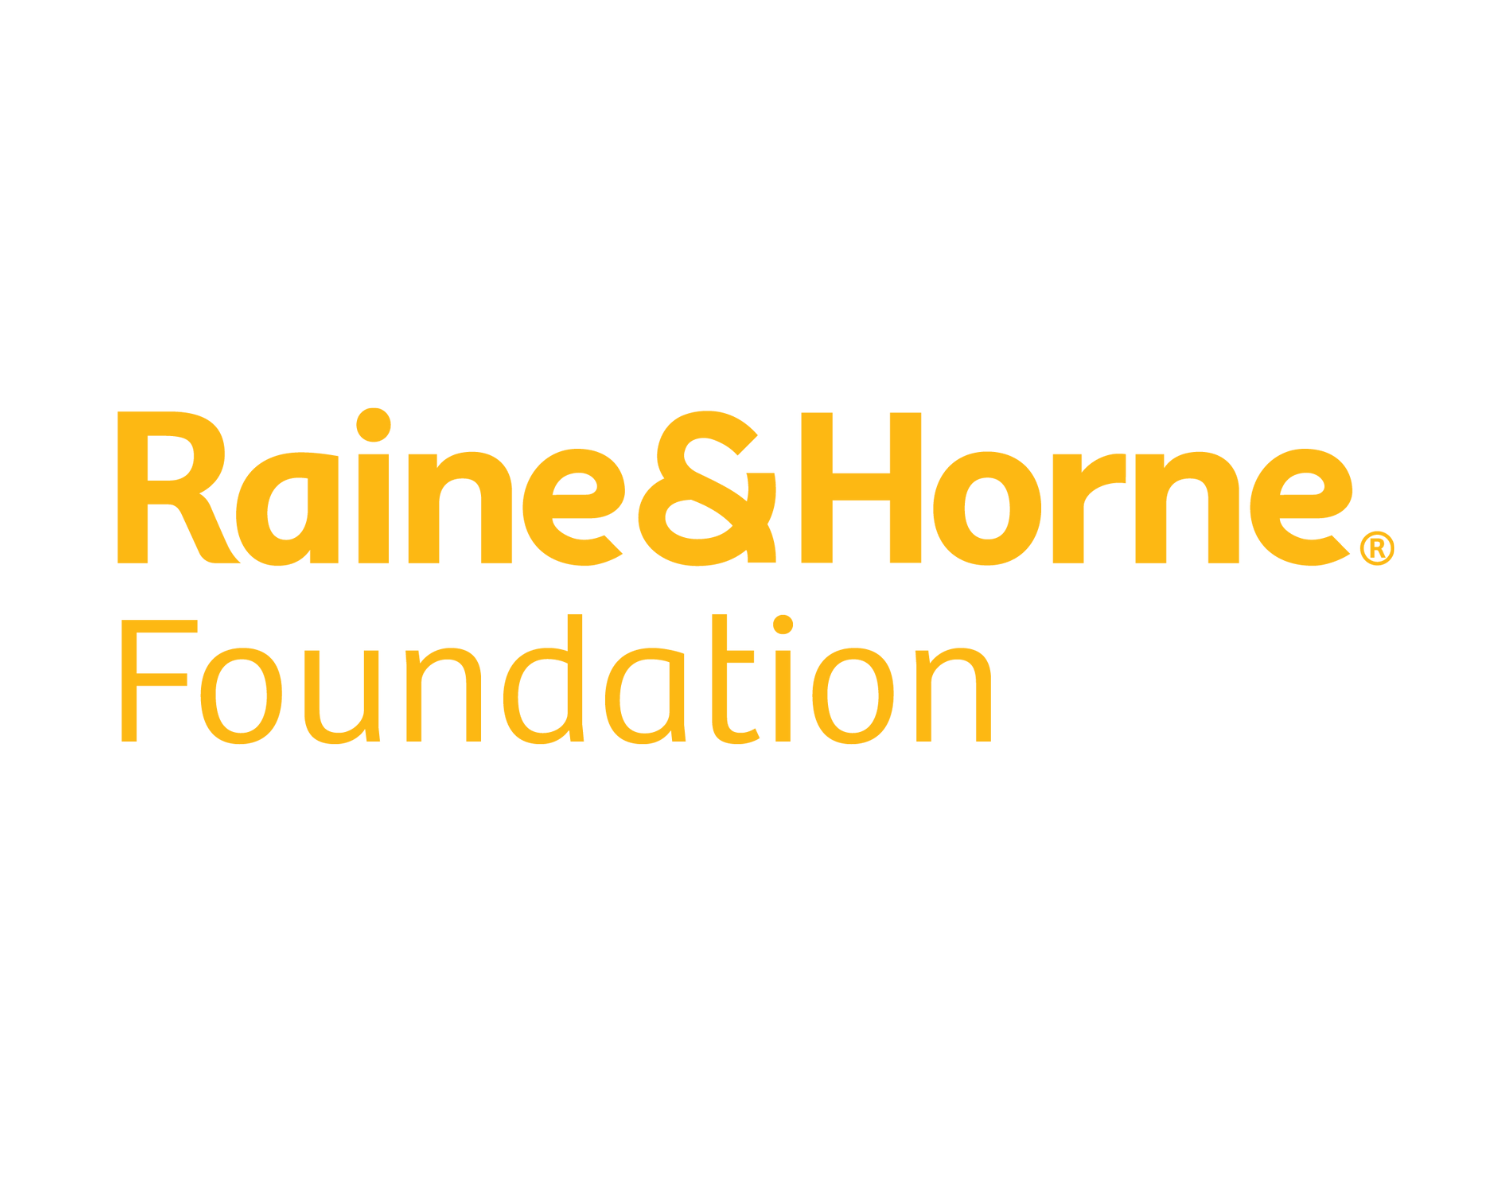 Raine & Horne Foundation